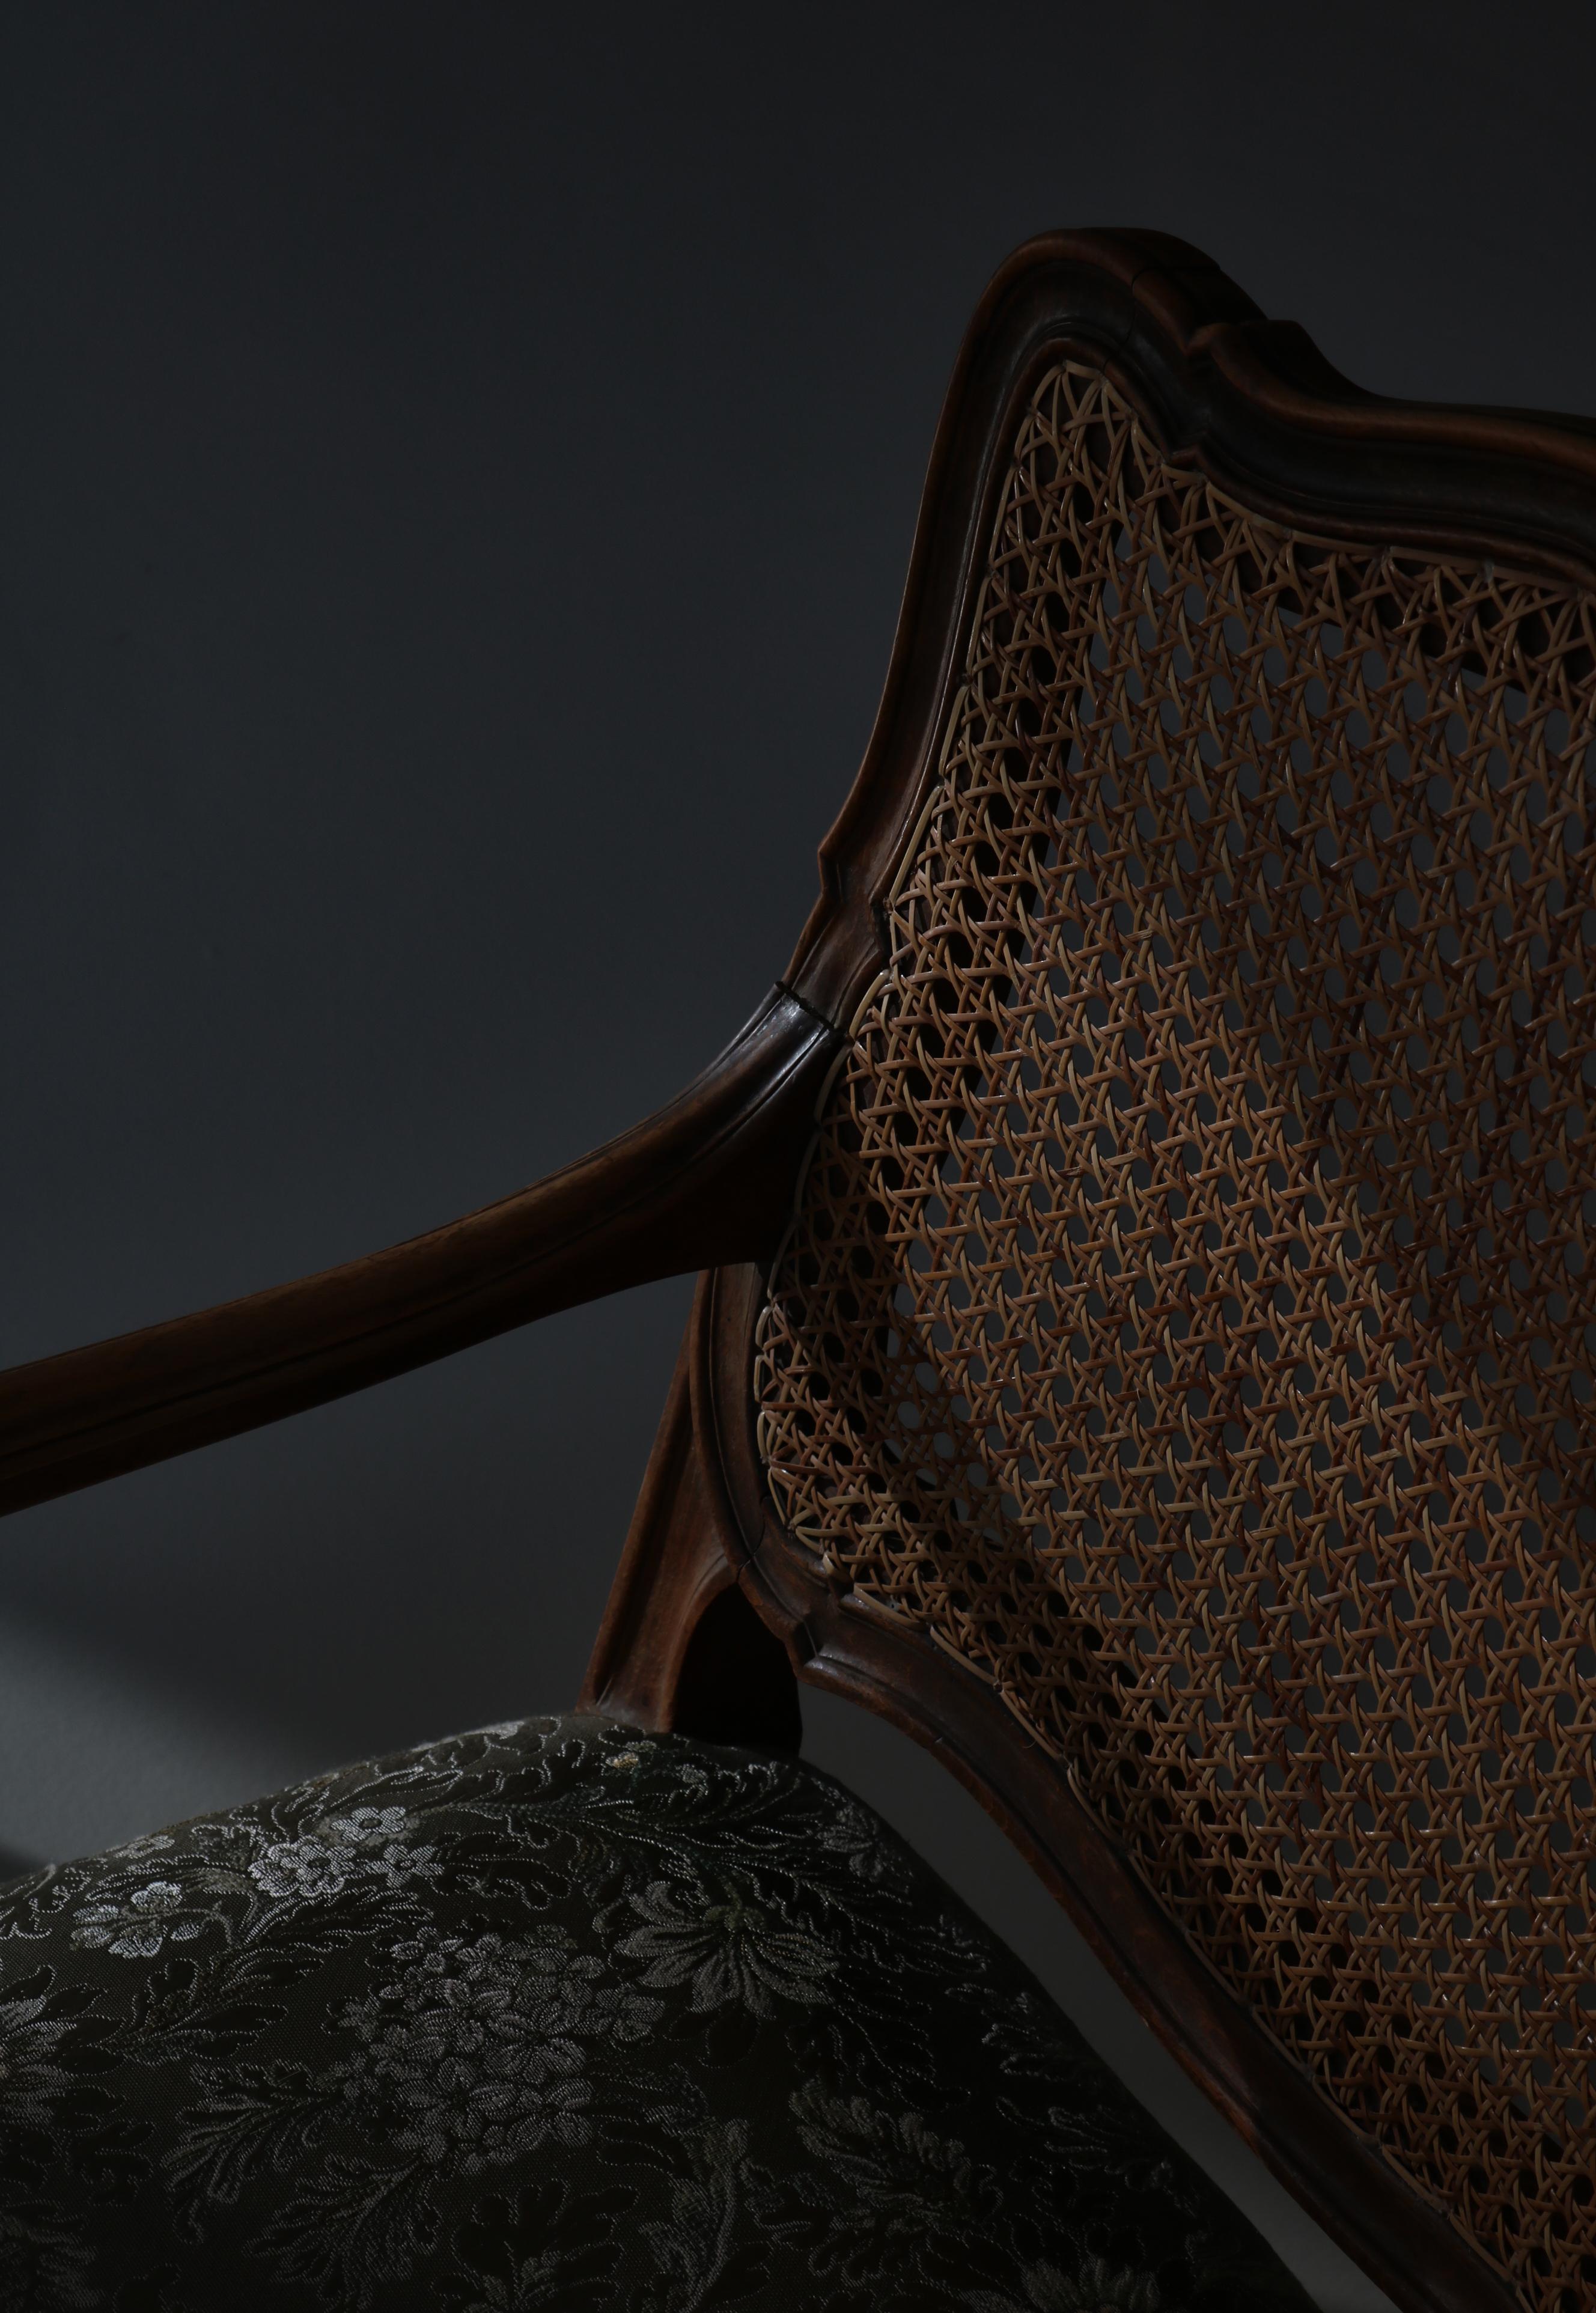 Etonnant fauteuil Bergére néo-rococo, probablement réalisé au Danemark au début du 20e siècle par un ébéniste. Fabriqué en bois de noyer massif avec dossier cannage en osier. Tapissé d'un magnifique tissu de soie brodé de motifs floraux. Coussin de